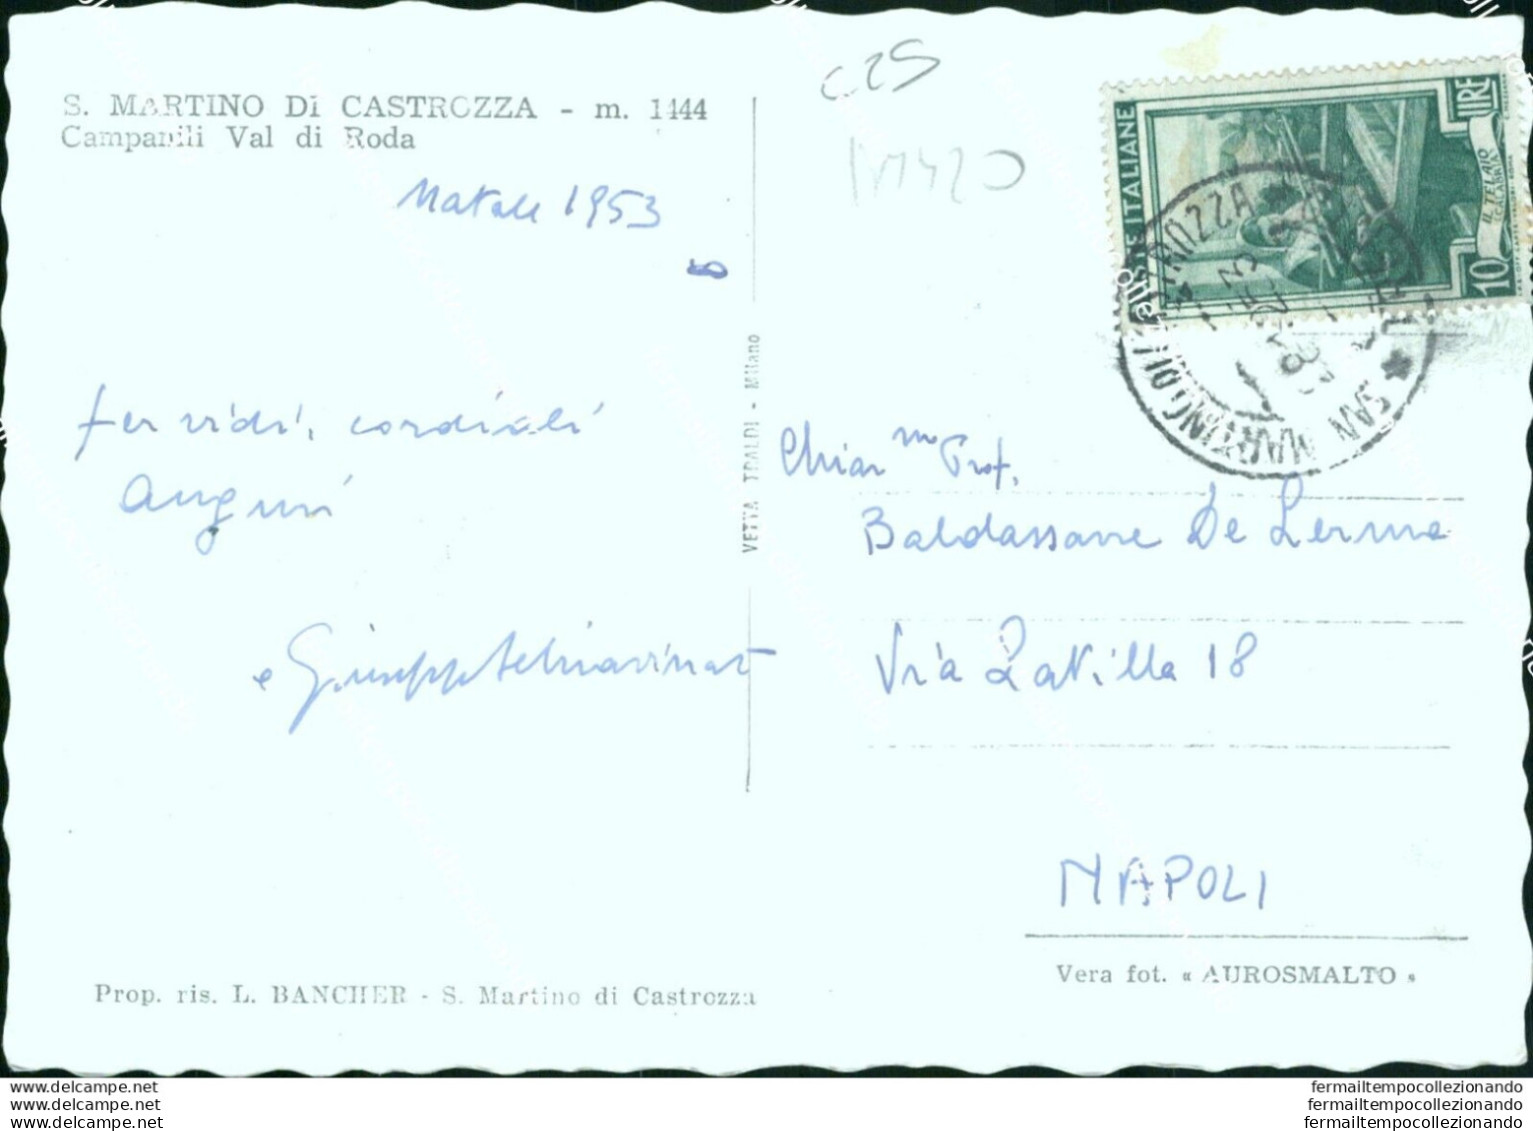 Bm420 Cartolina S.martino Di Castrozza Campanili Val Di Roda Provincia Di Trento - Trento